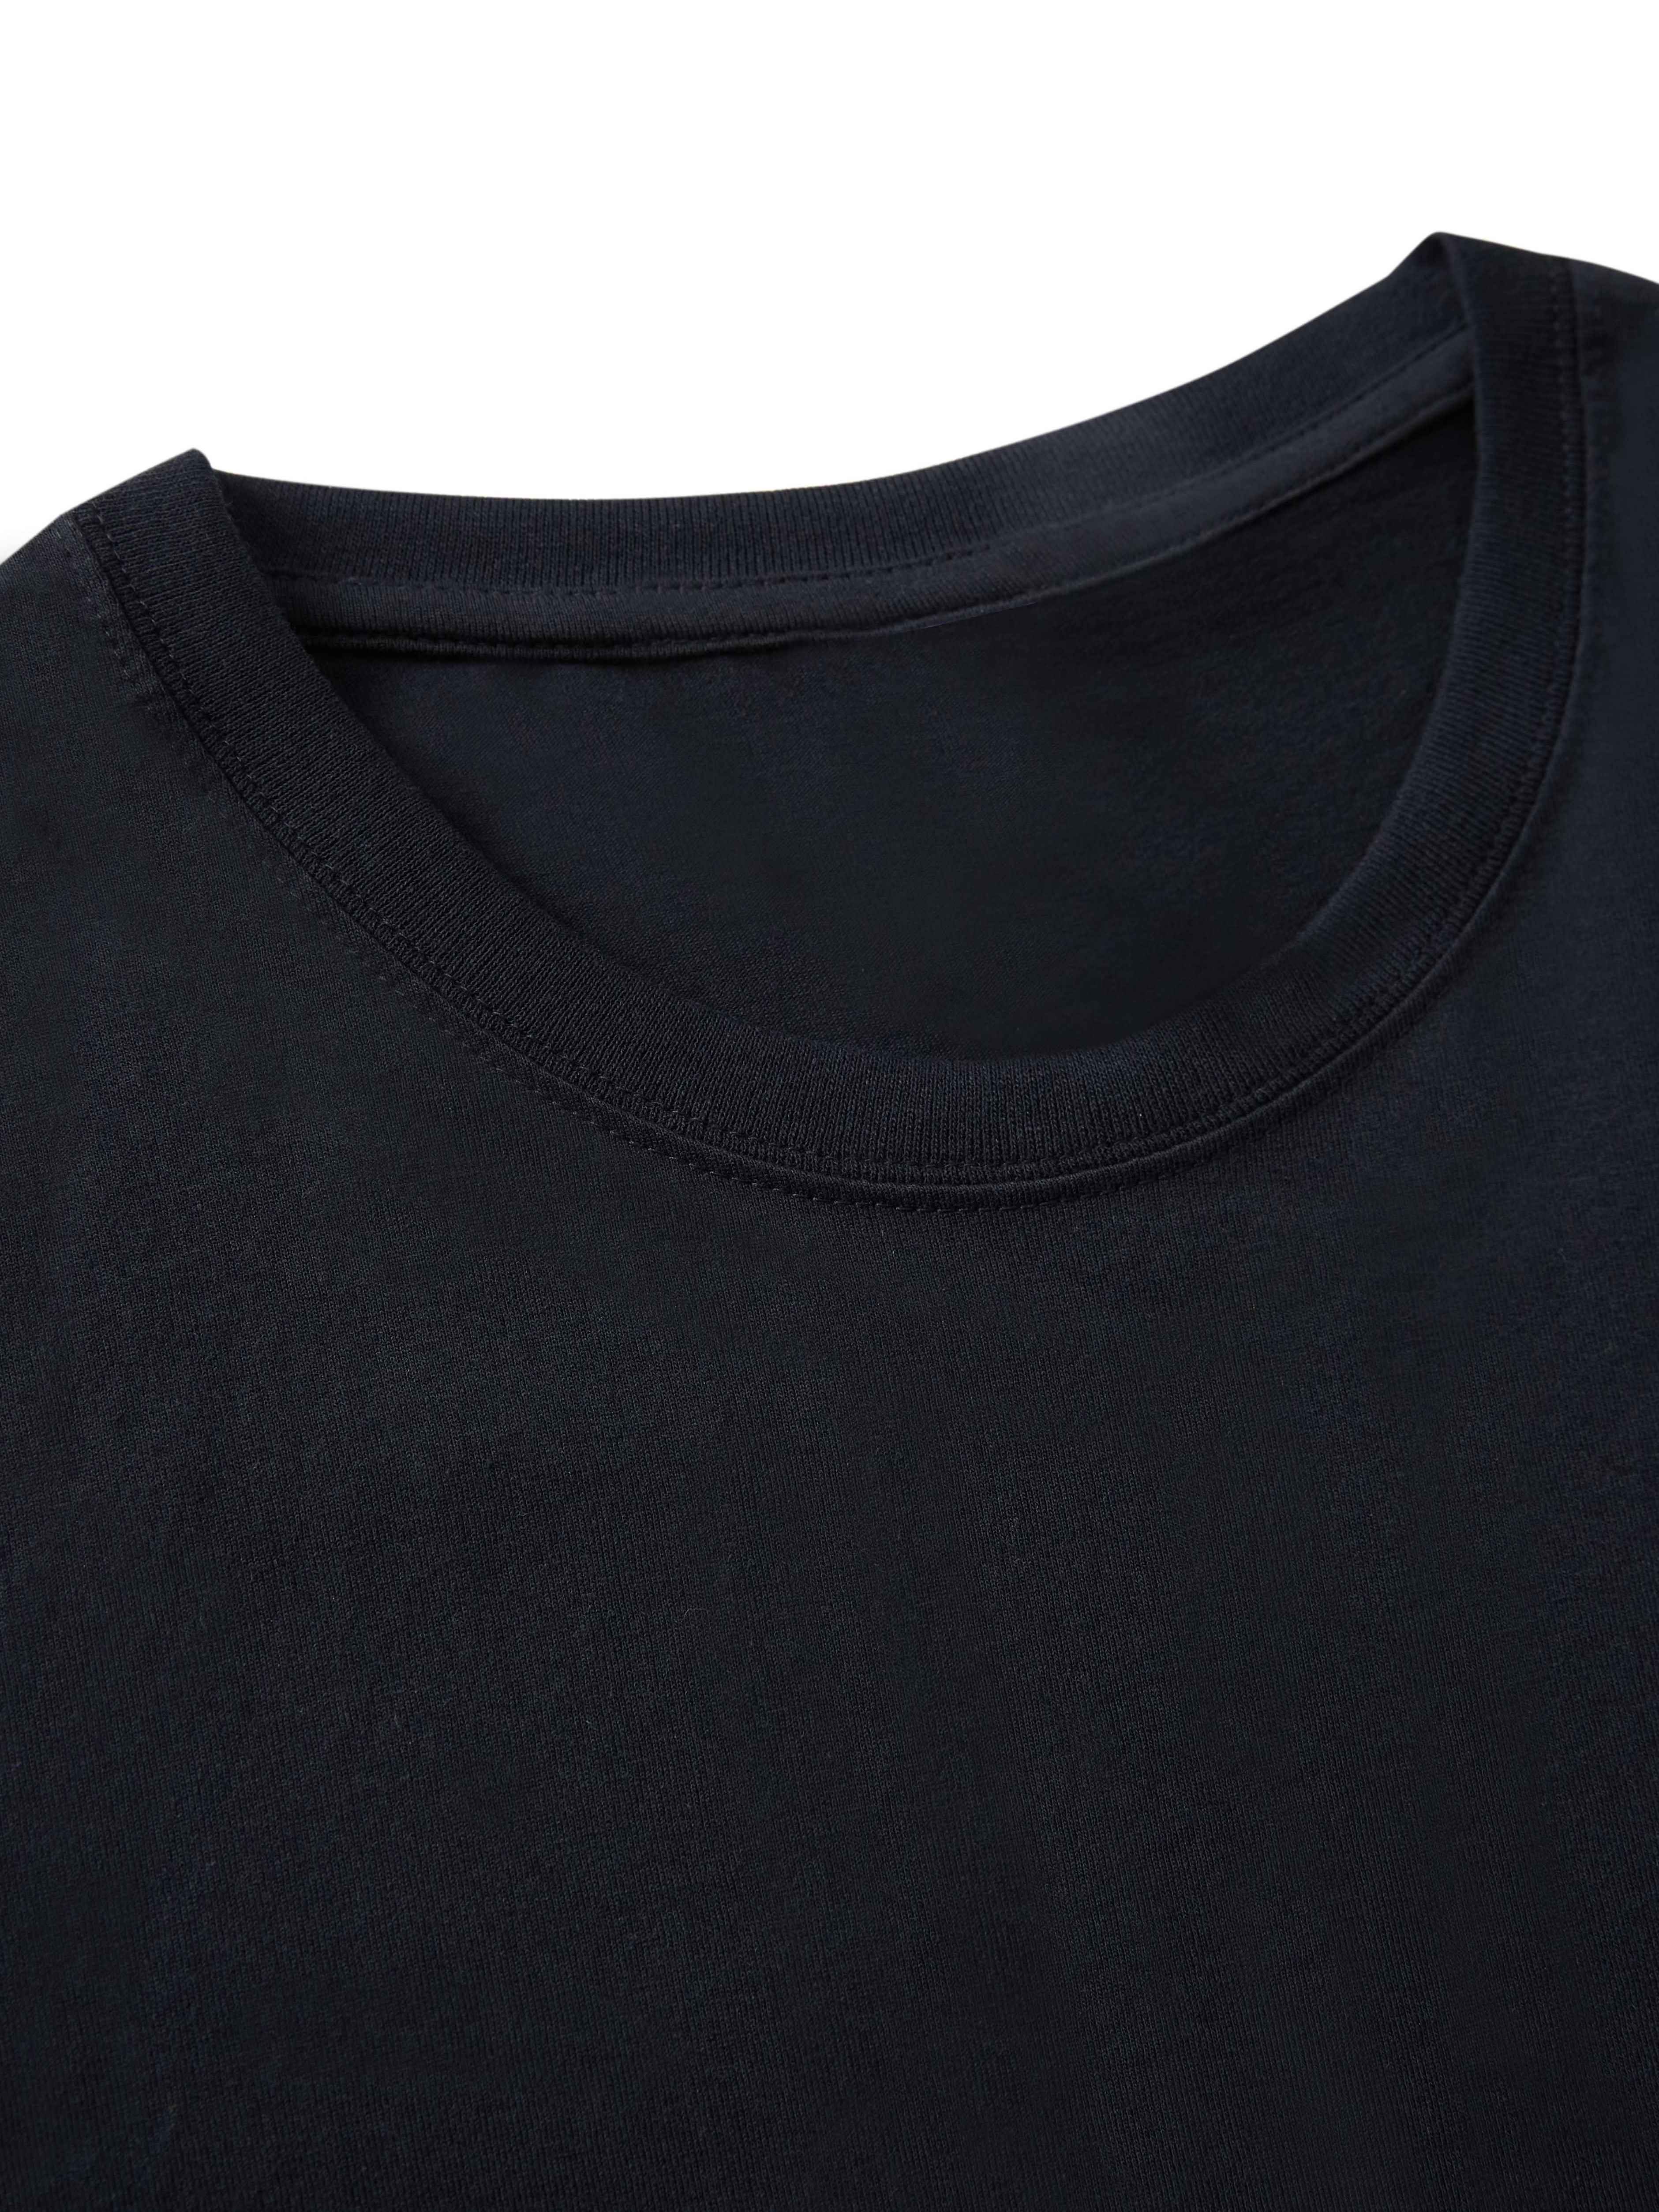 Black Gymrat T-shirt With Silk